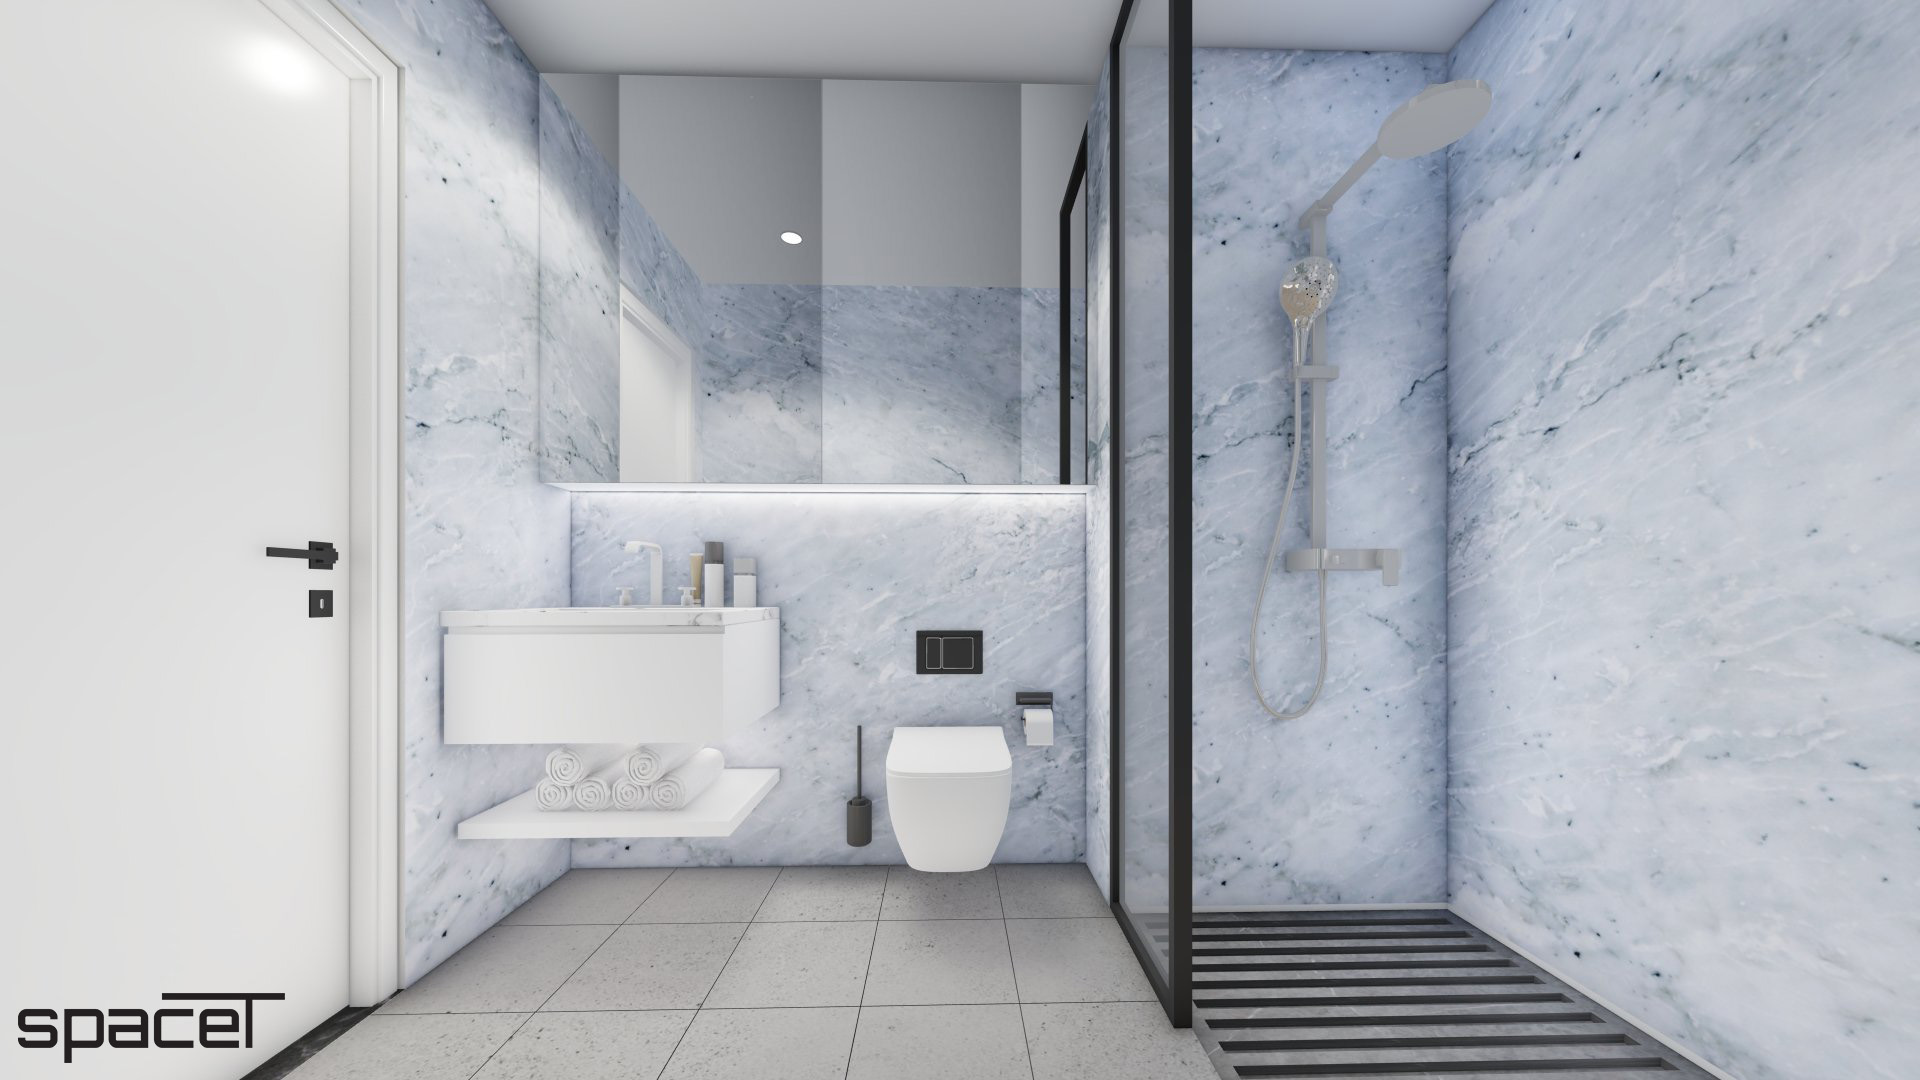 Phòng tắm, nhà vệ sinh, phong cách Tối giản Minimalist, thiết kế concept nội thất, căn hộ The Origami Vinhomes Quận 9